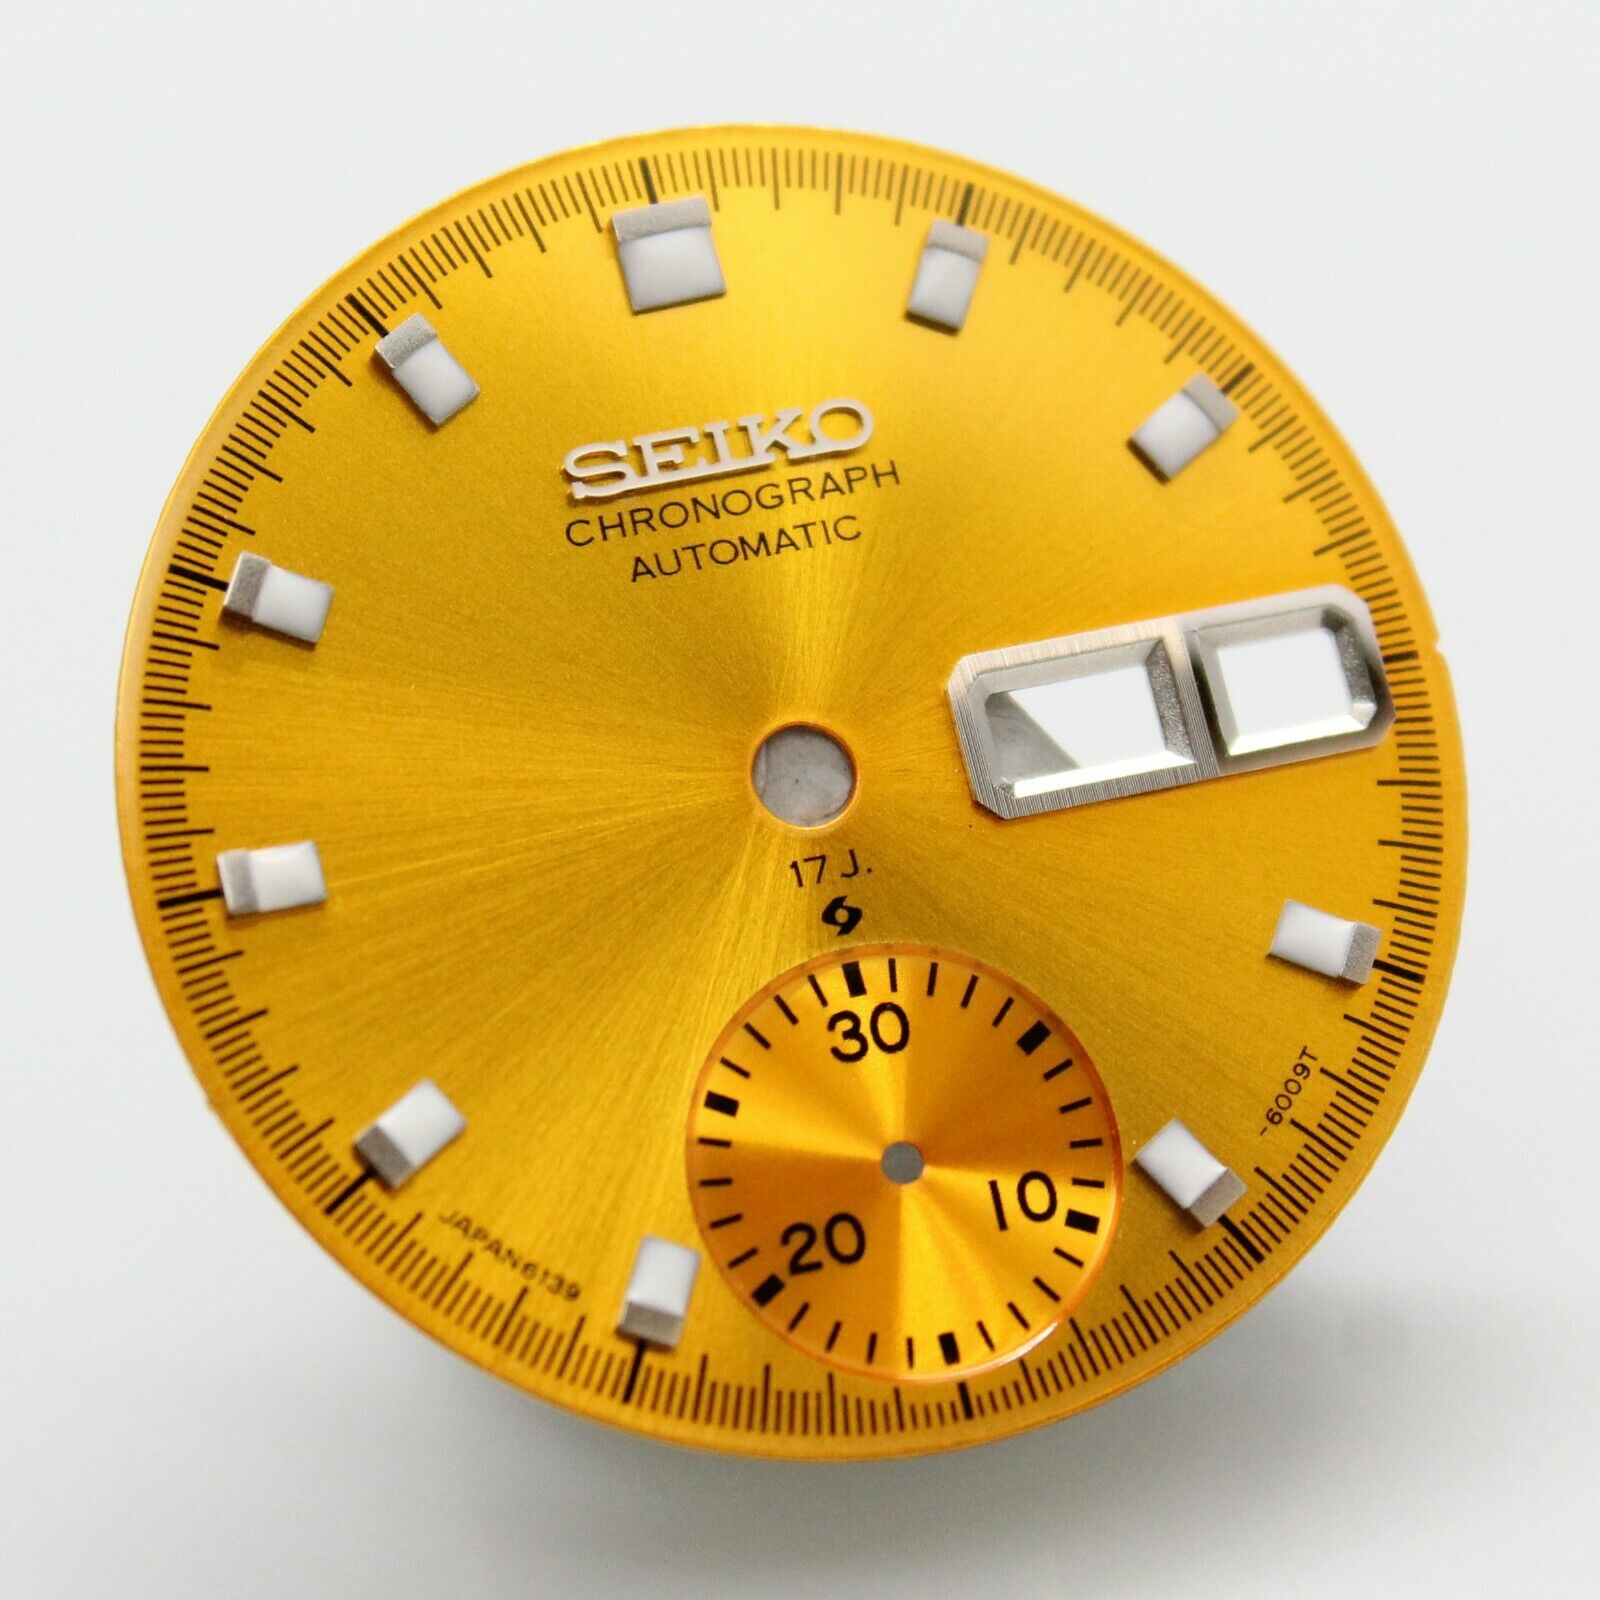 17J Yellow Dial Vintage SEIKO Chronograph 6139-6002 6139-6005 6001 600 – A  parts